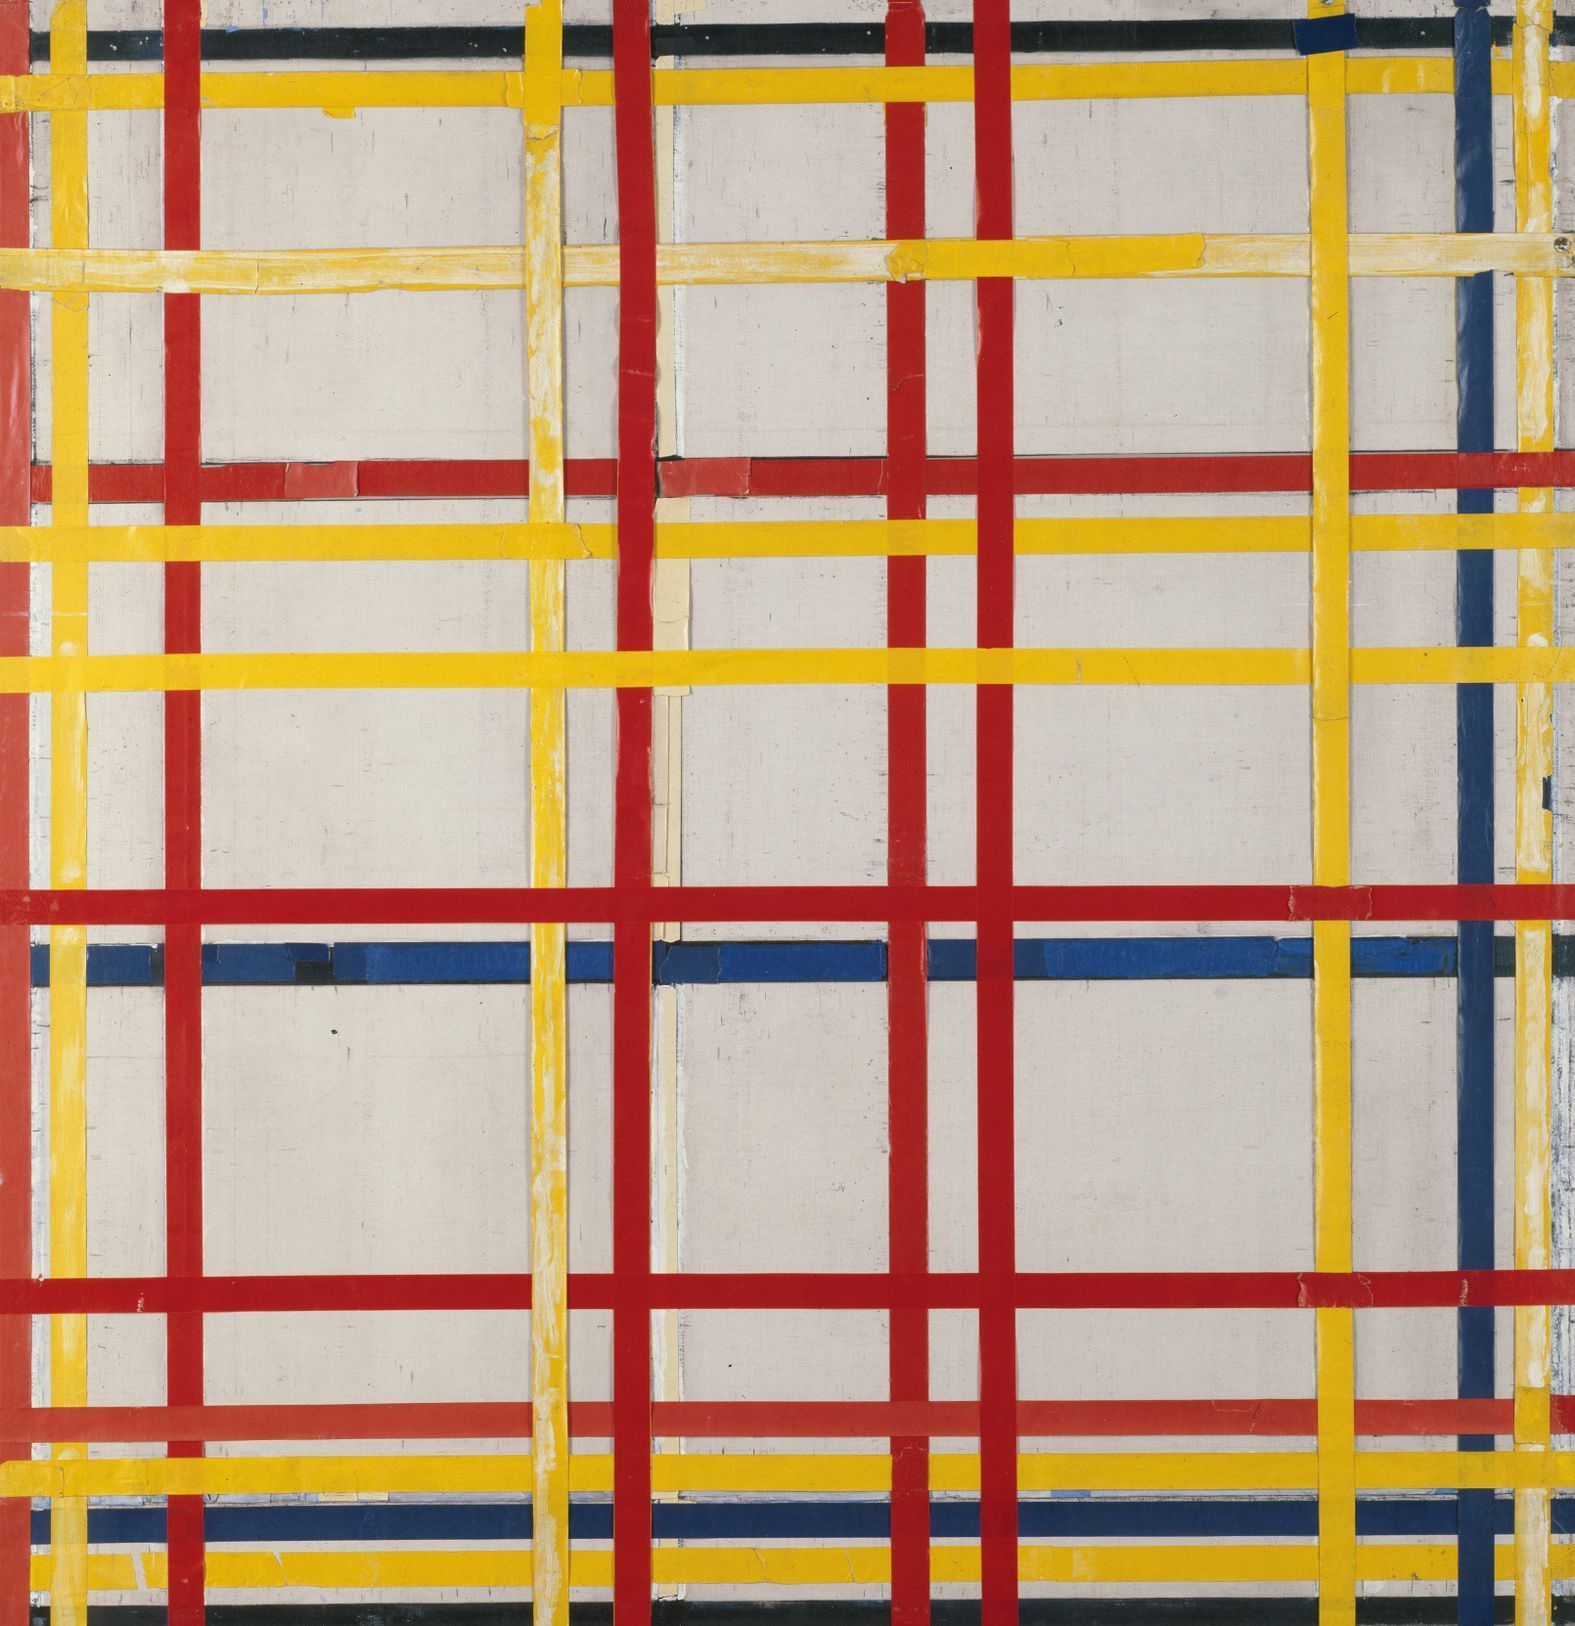 Piet Mondrian: New York City 1, 1941